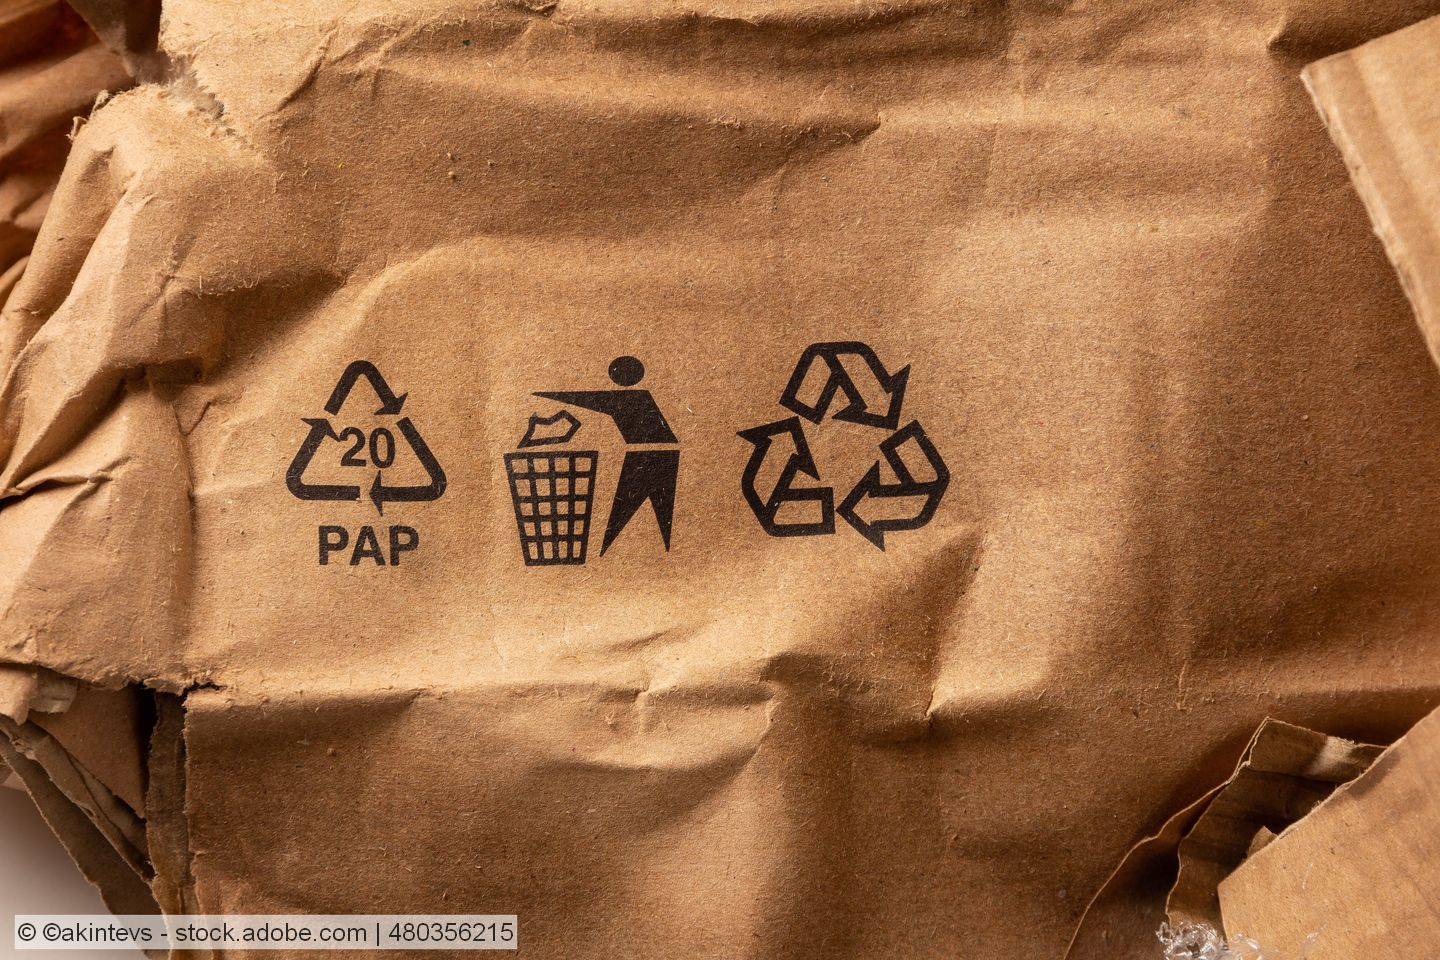 Recyclingfähigkeit von faserbasierten Verpackungen: 4evergreen arbeitet unter Hochdruck an Protokollen 